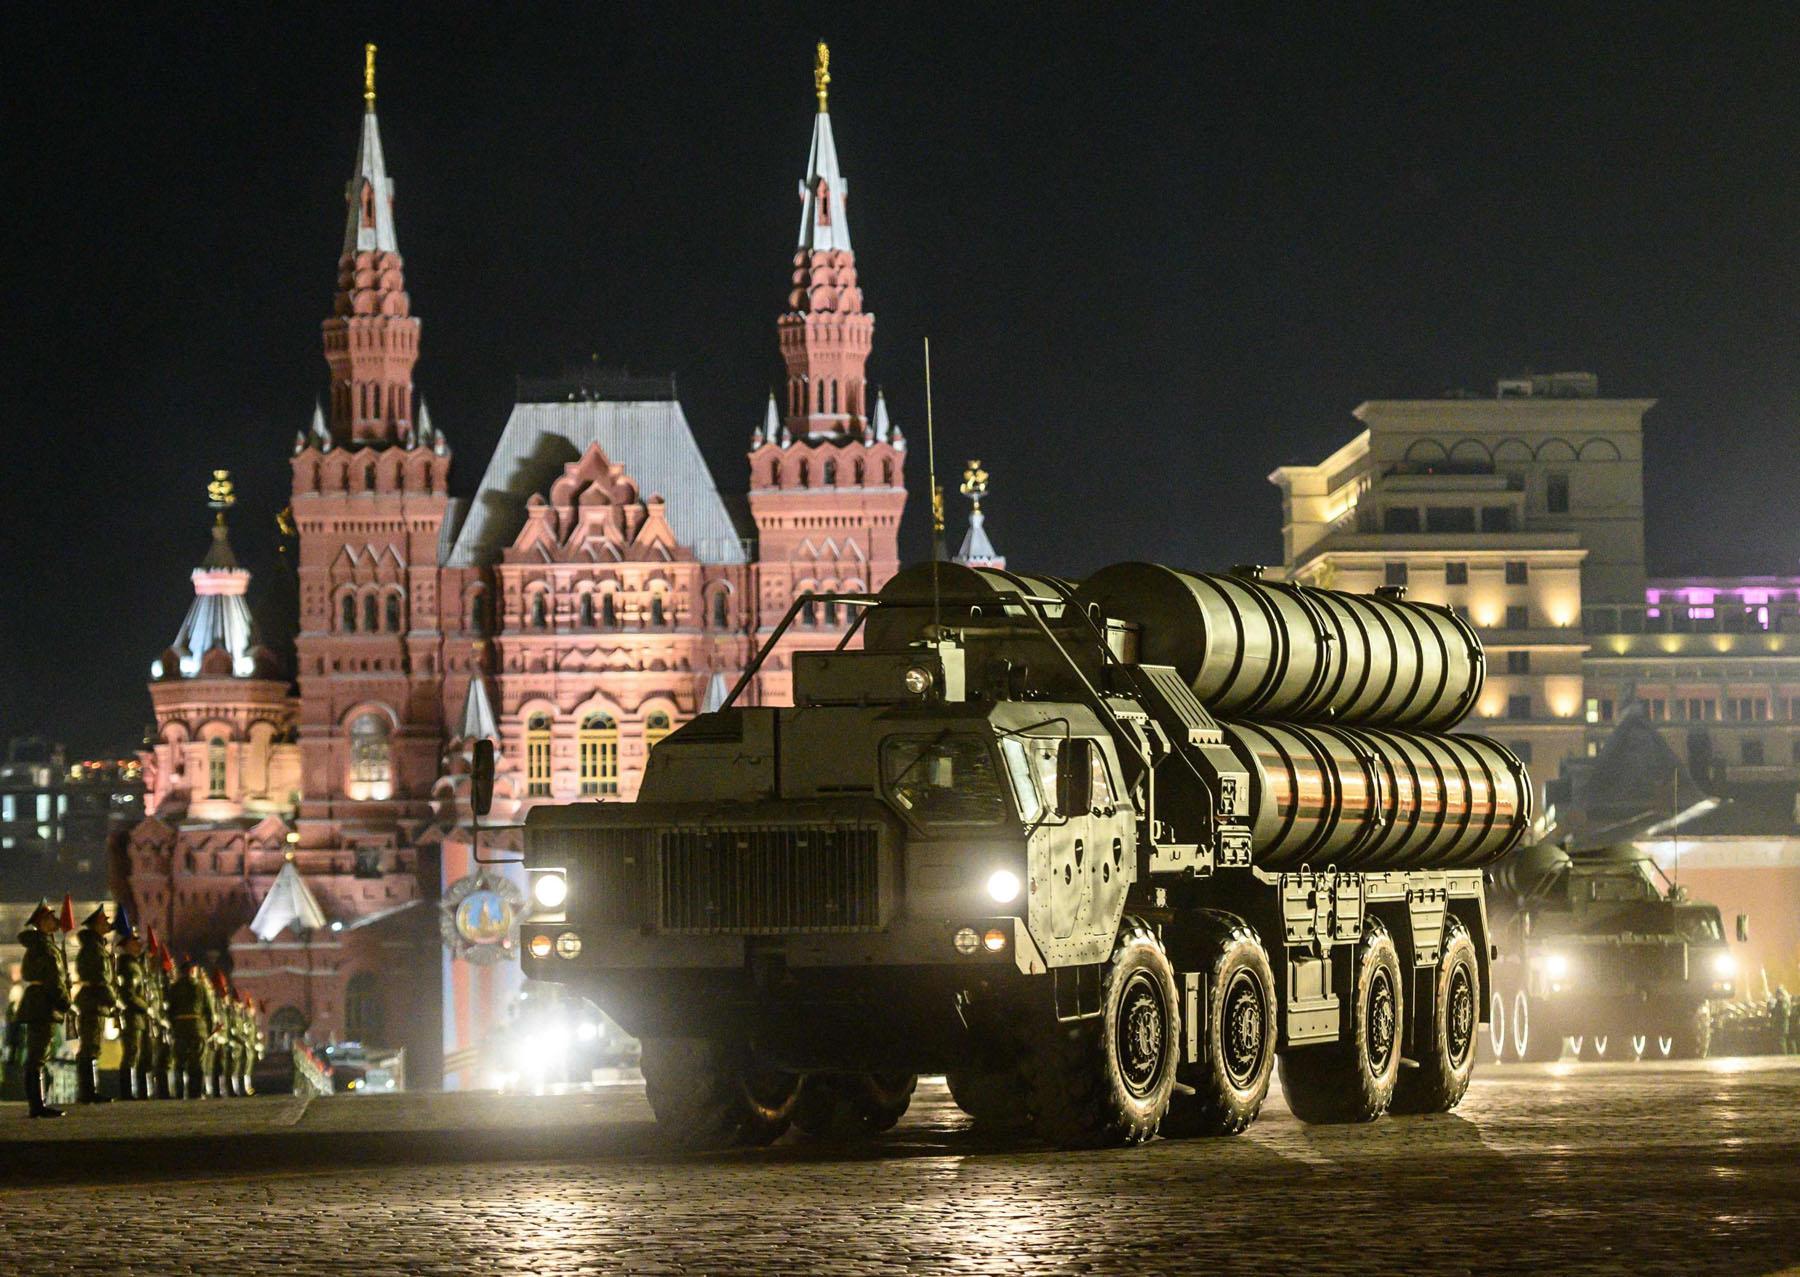 صواريخ اس-400 الروسية